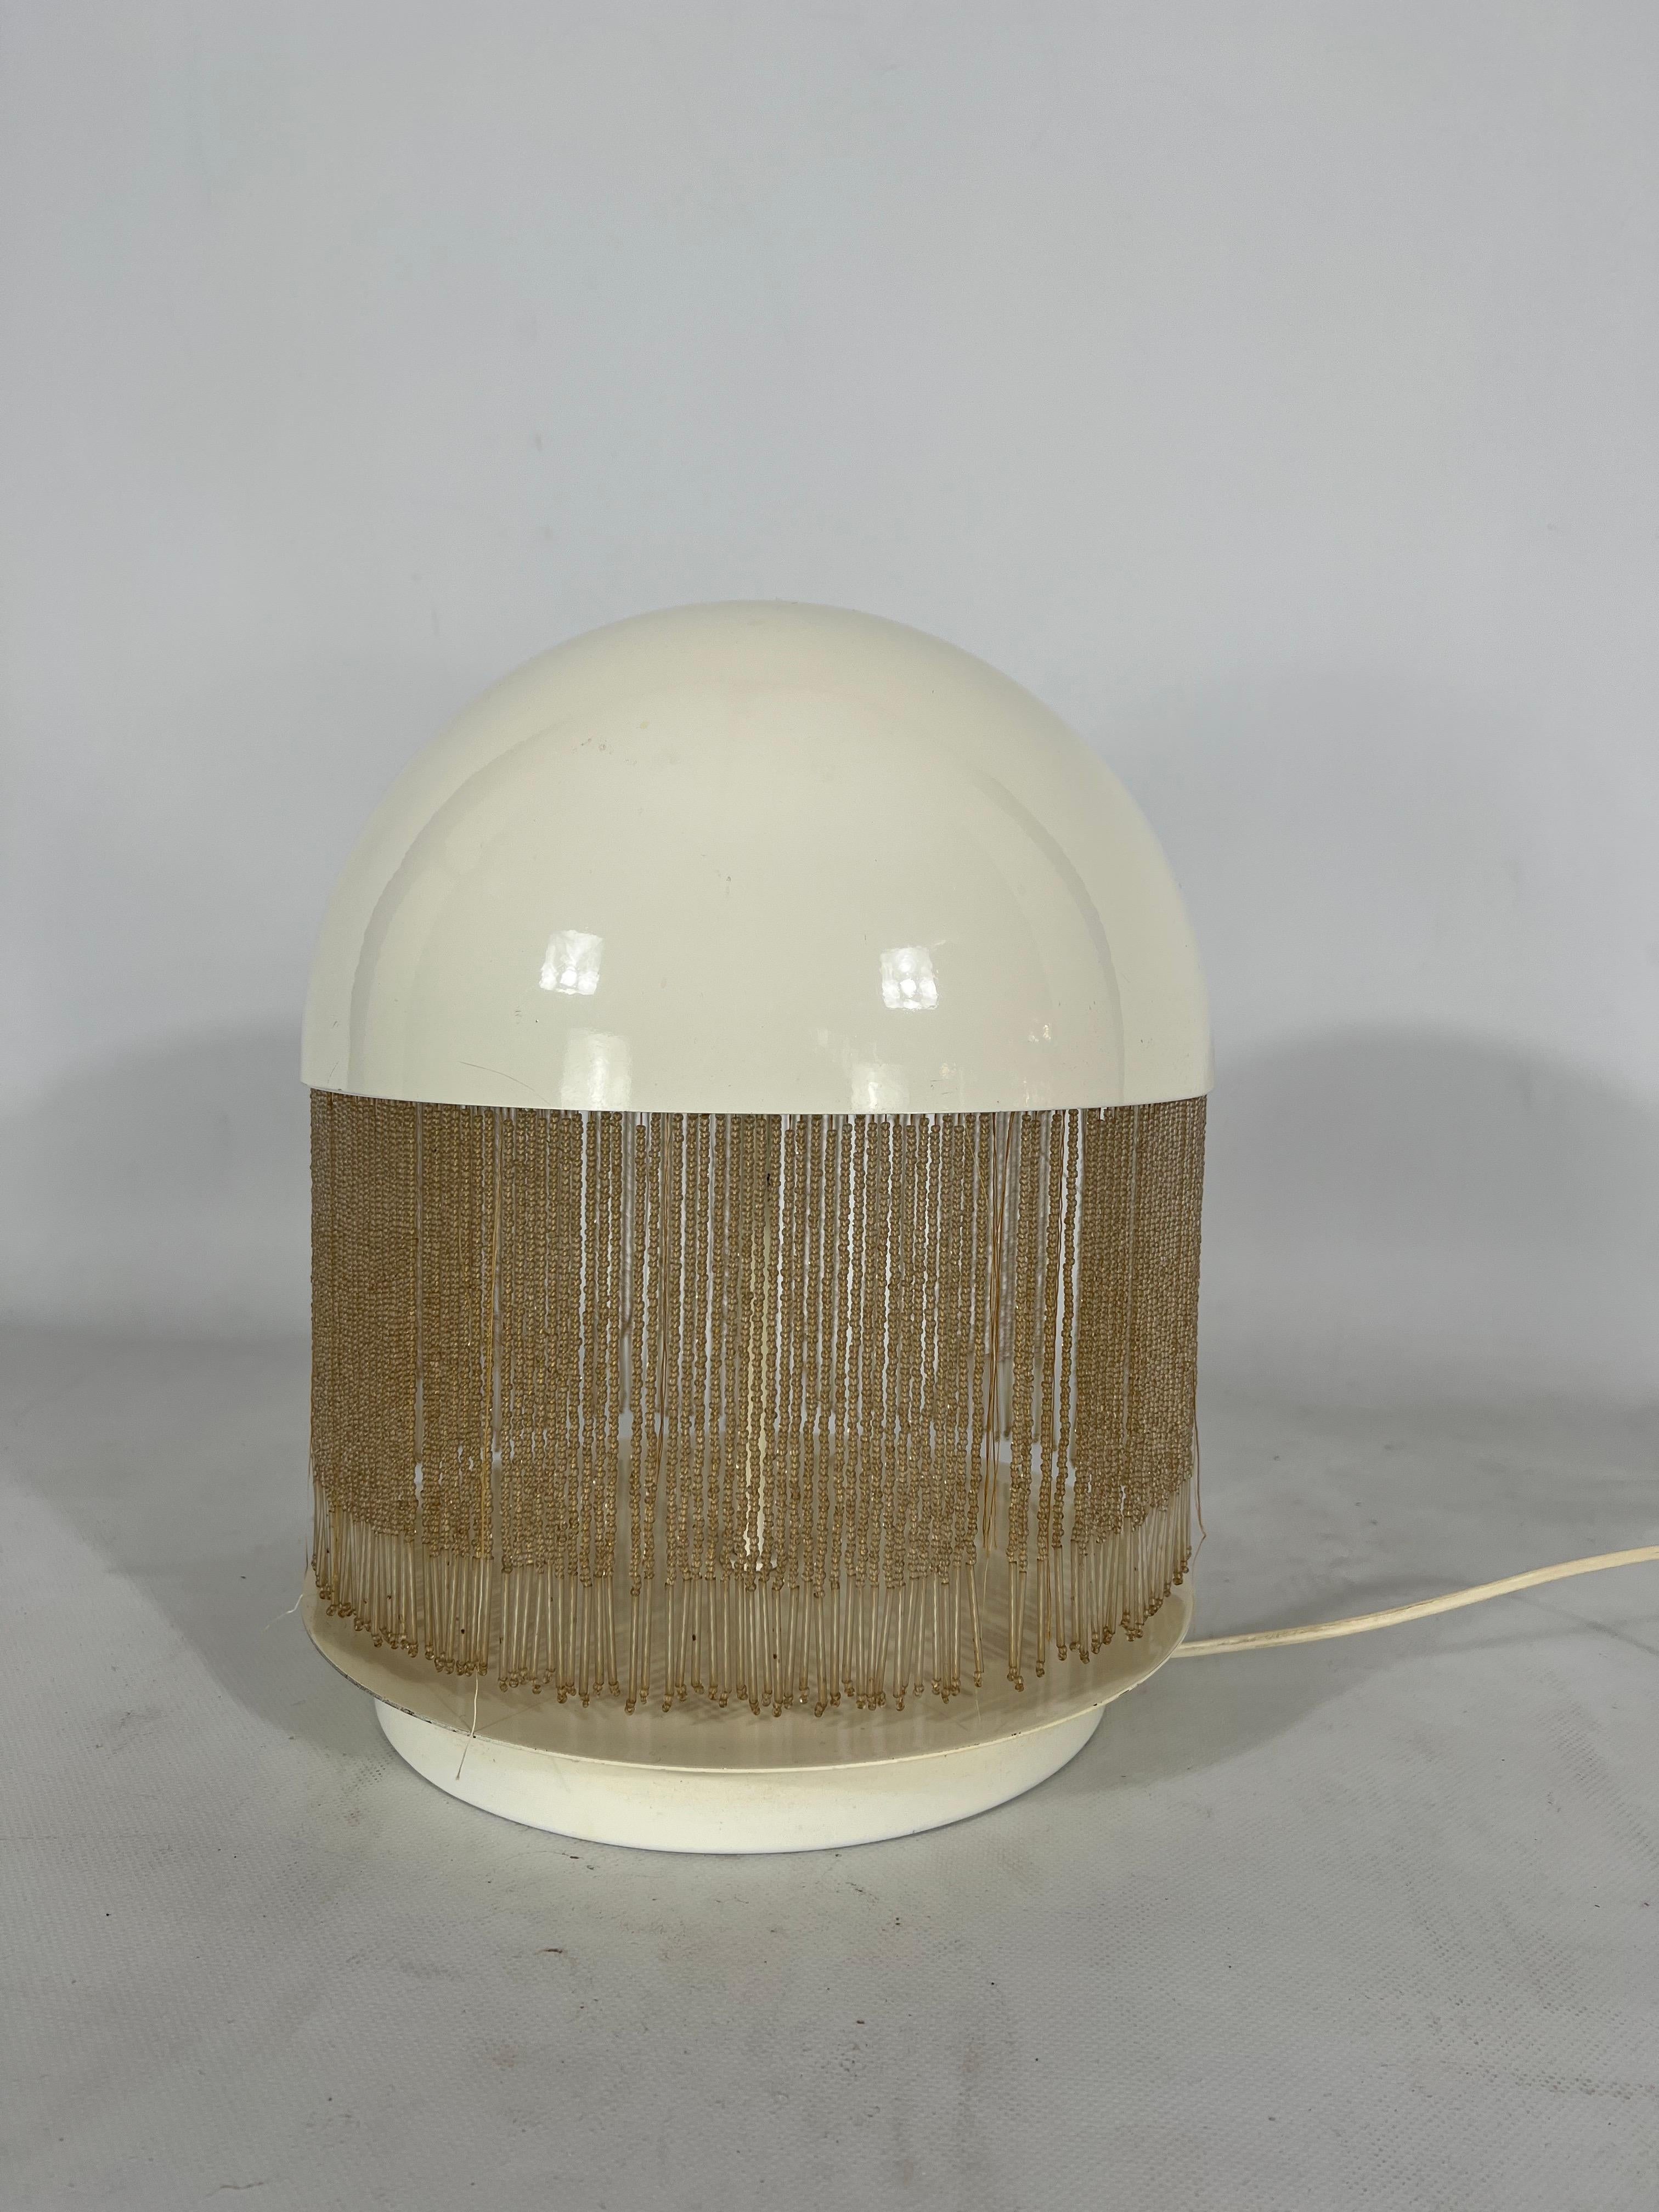 Rare Italian Modern Otero Table Lamp by Giuliana Gramigna for Quattrifolio, 1979 For Sale 9